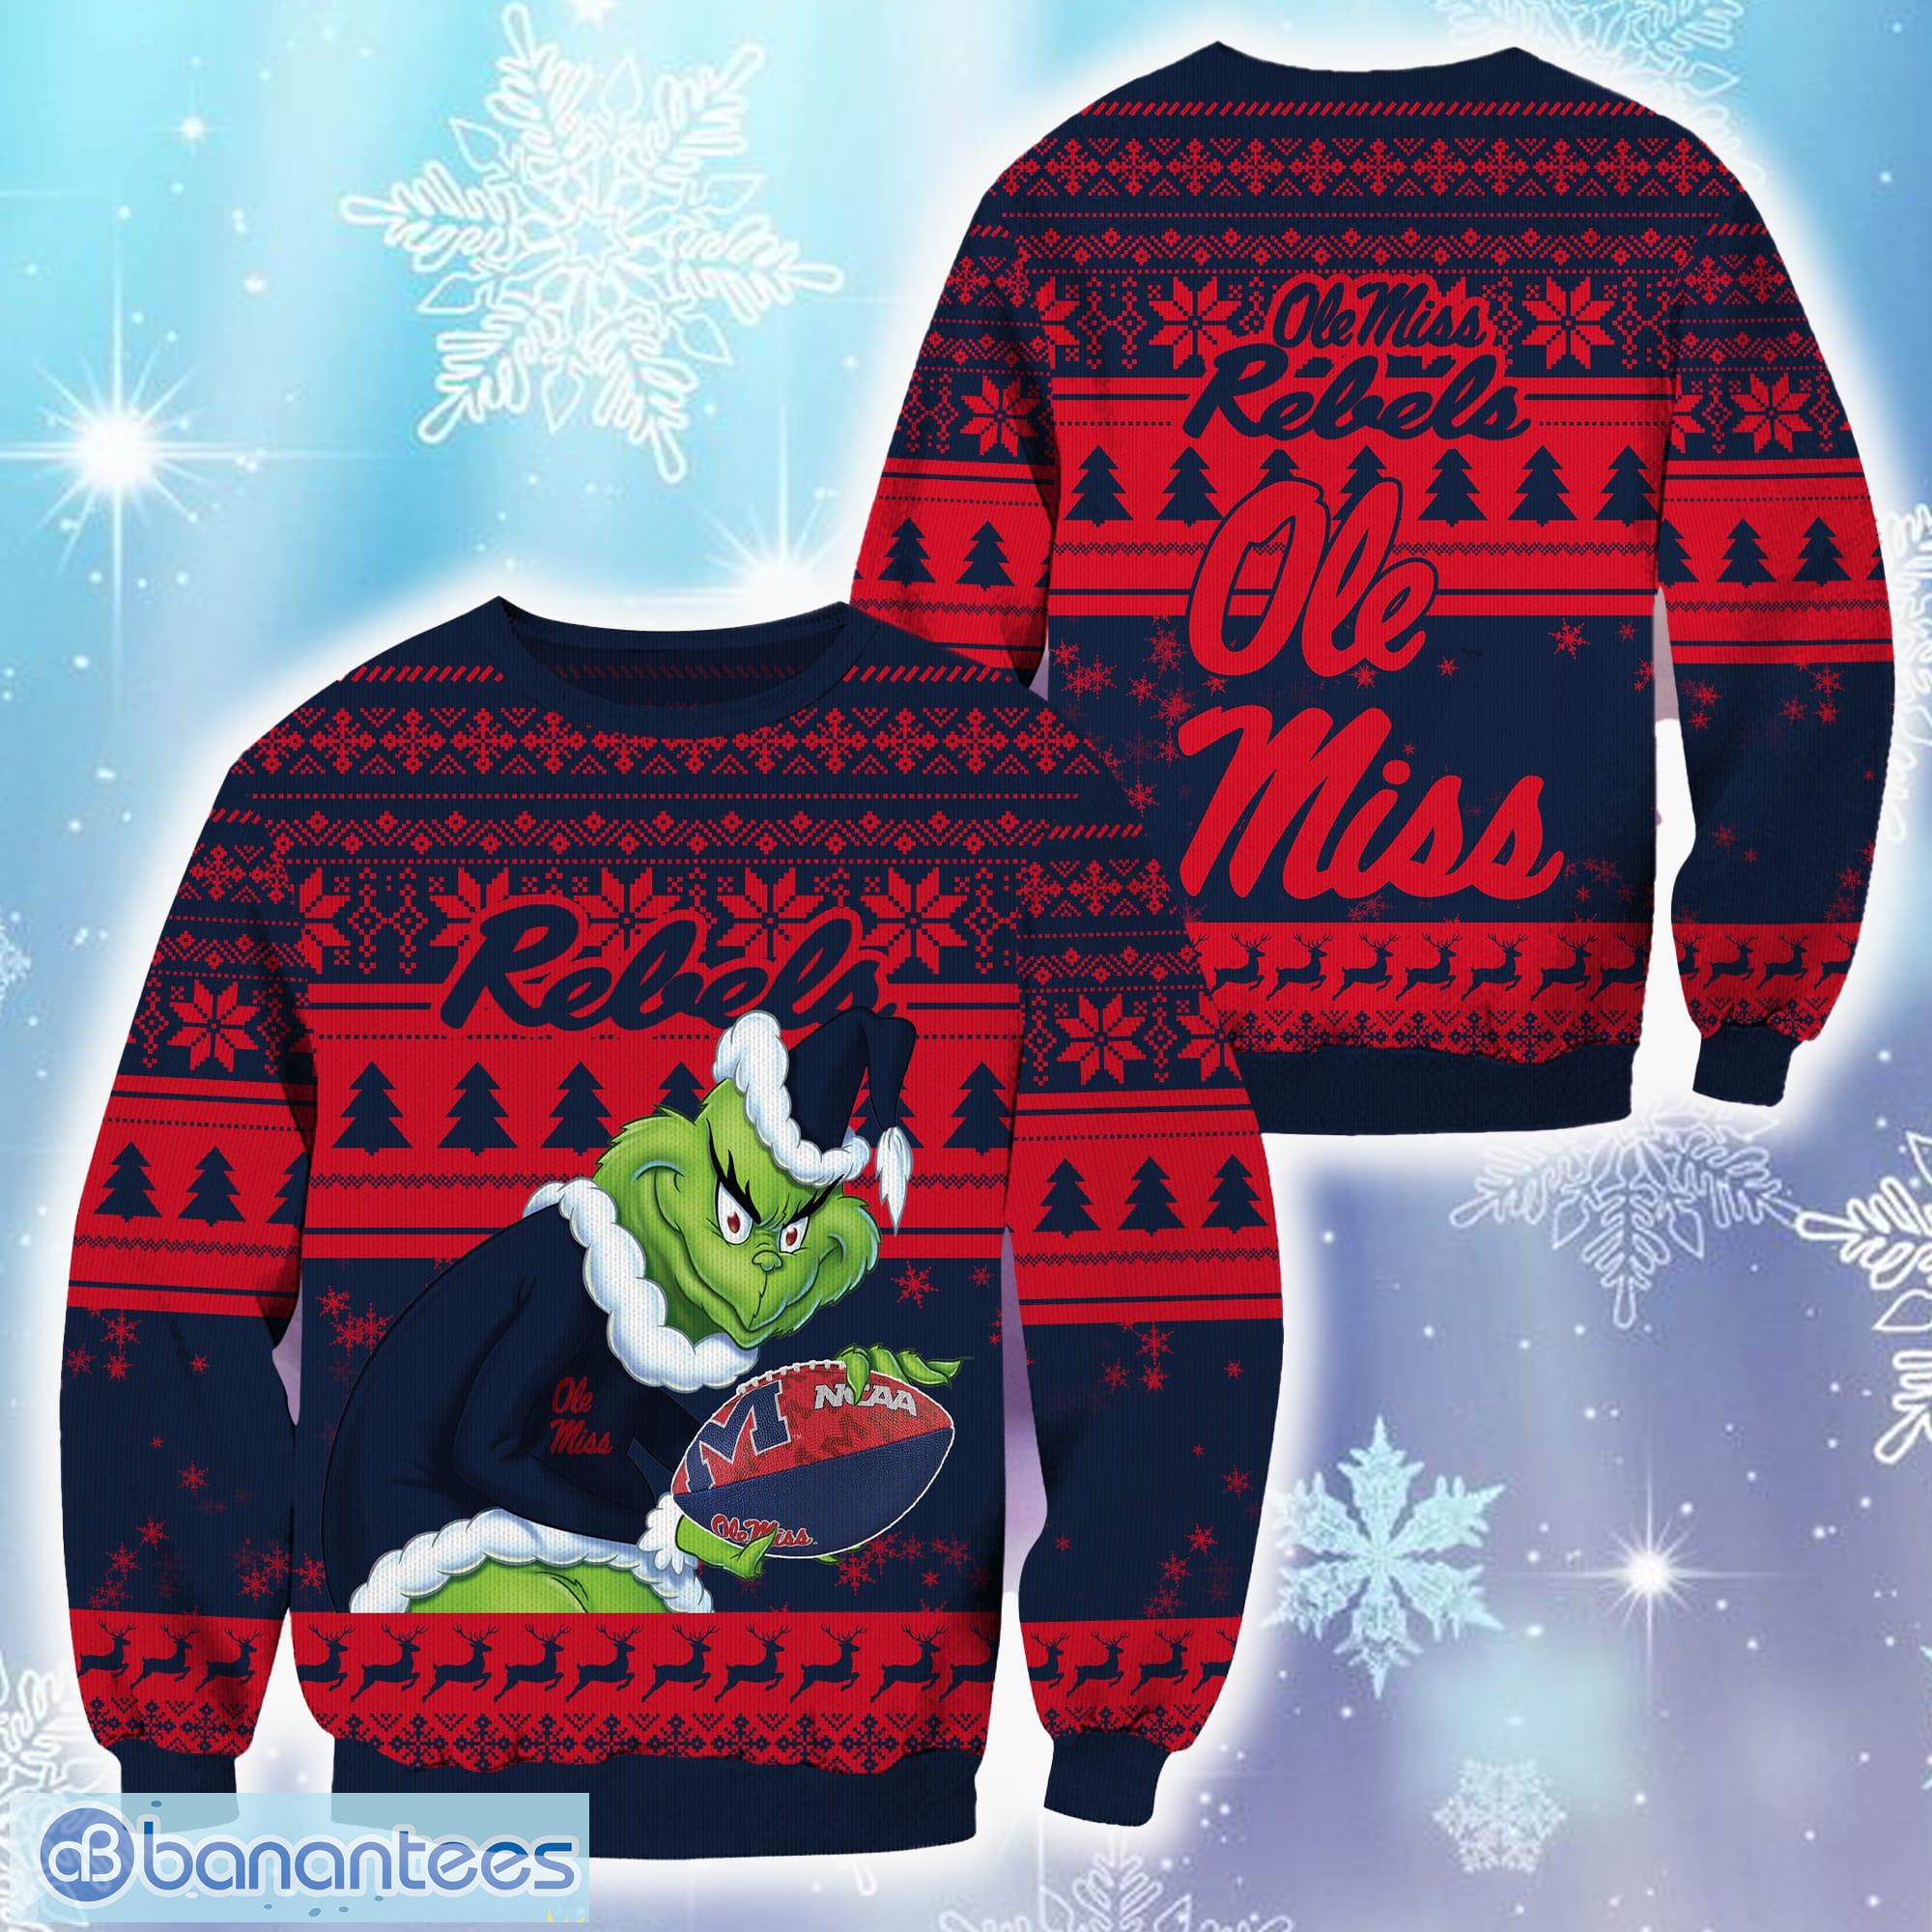 Team Nice Team Rebel Cute Christmas Sweatshirts Best Friends Gifts